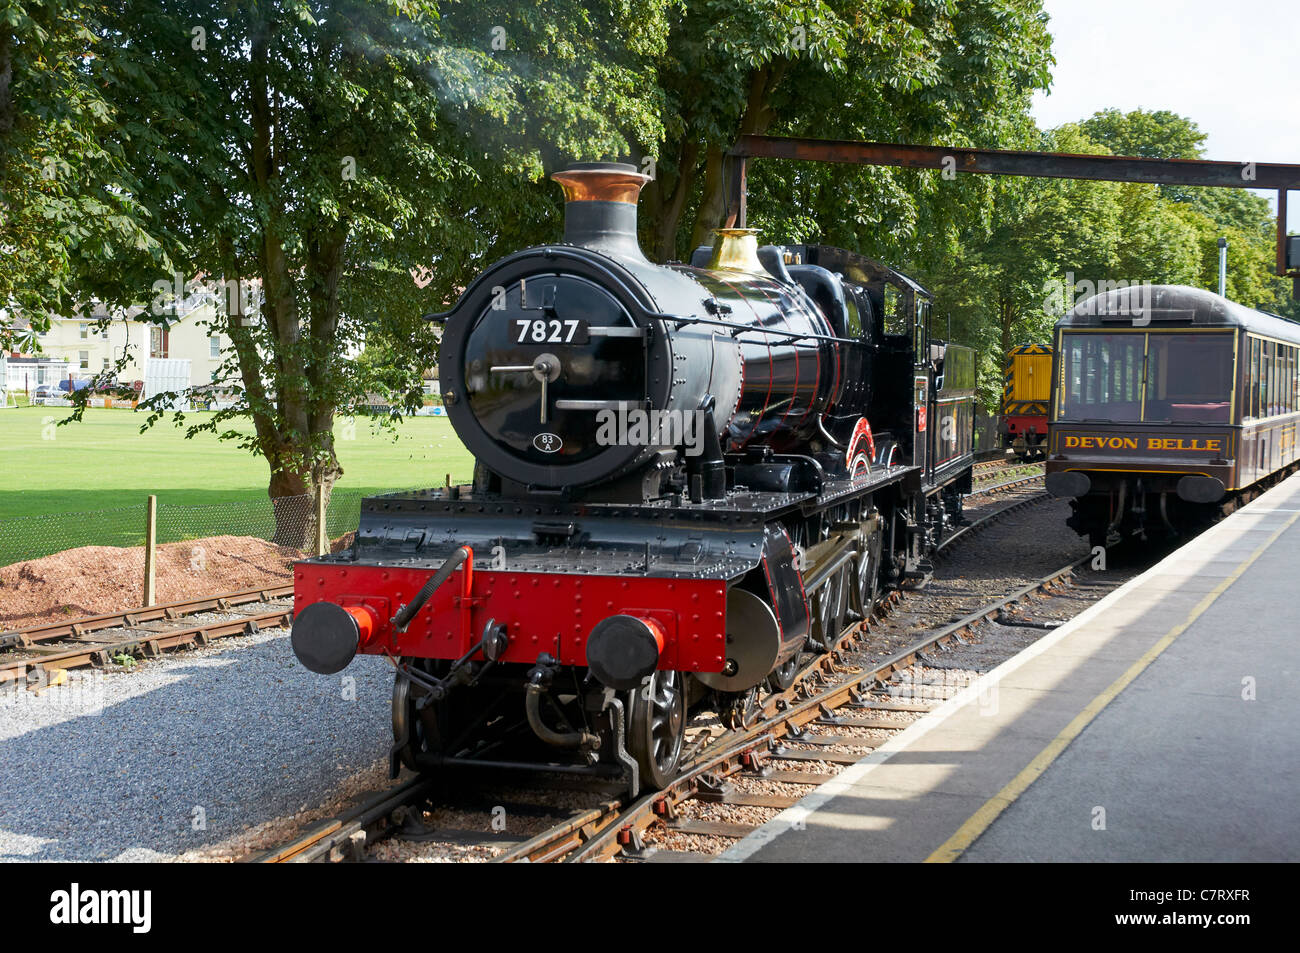 Dartmouth Steam Railway von Paignton, Kingswear (für Dartmouth) - eine touristische Eisenbahn in Devon, England. Stockfoto